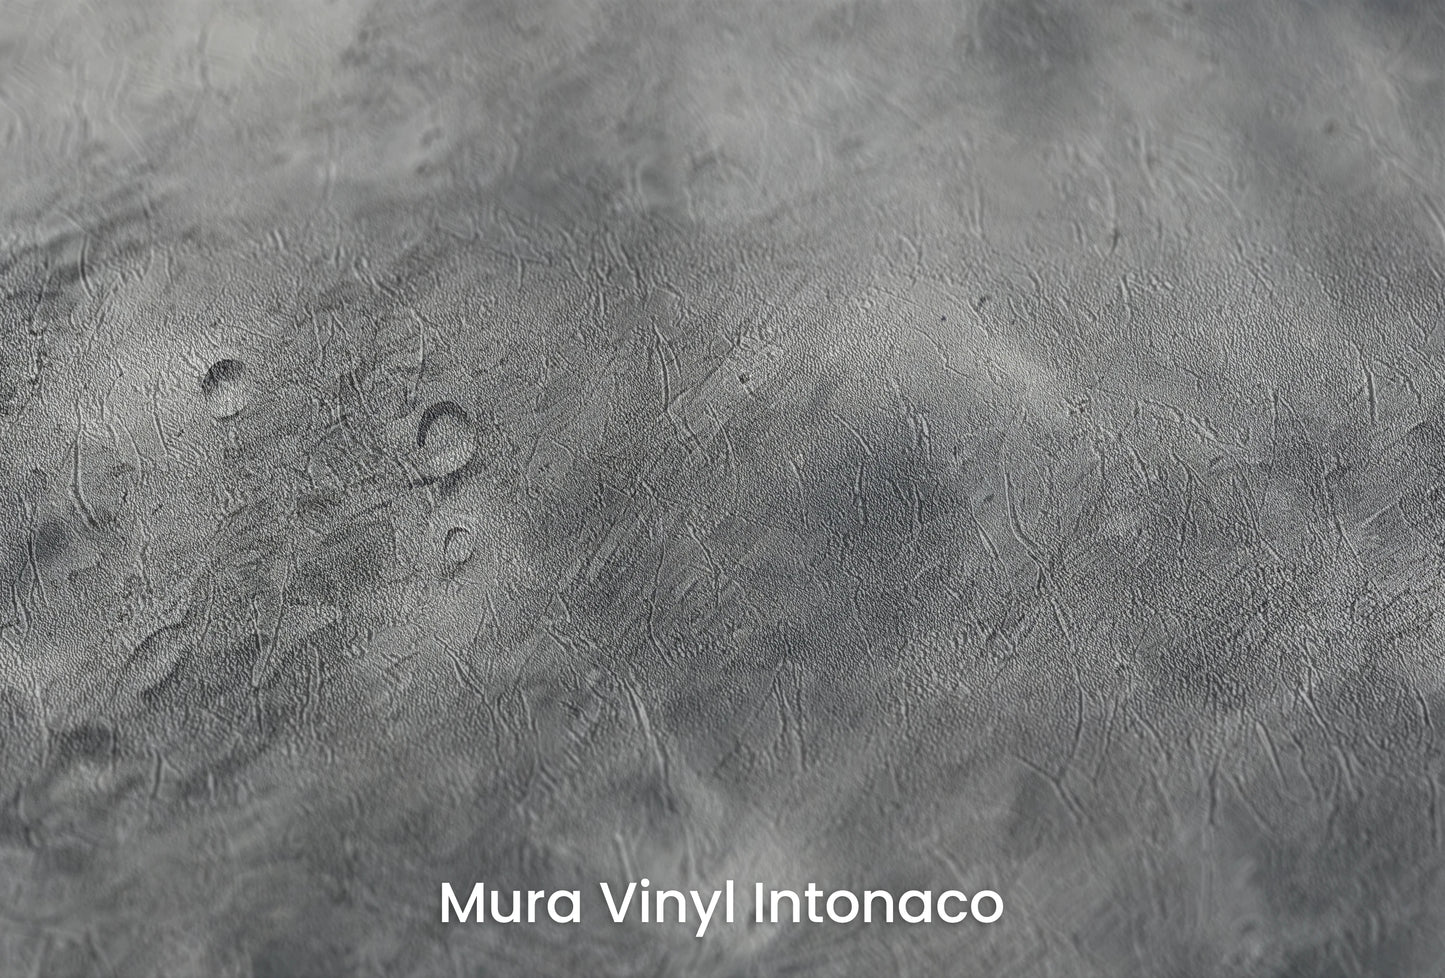 Zbliżenie na artystyczną fototapetę o nazwie Mercury's Crust na podłożu Mura Vinyl Intonaco - struktura tartego tynku.